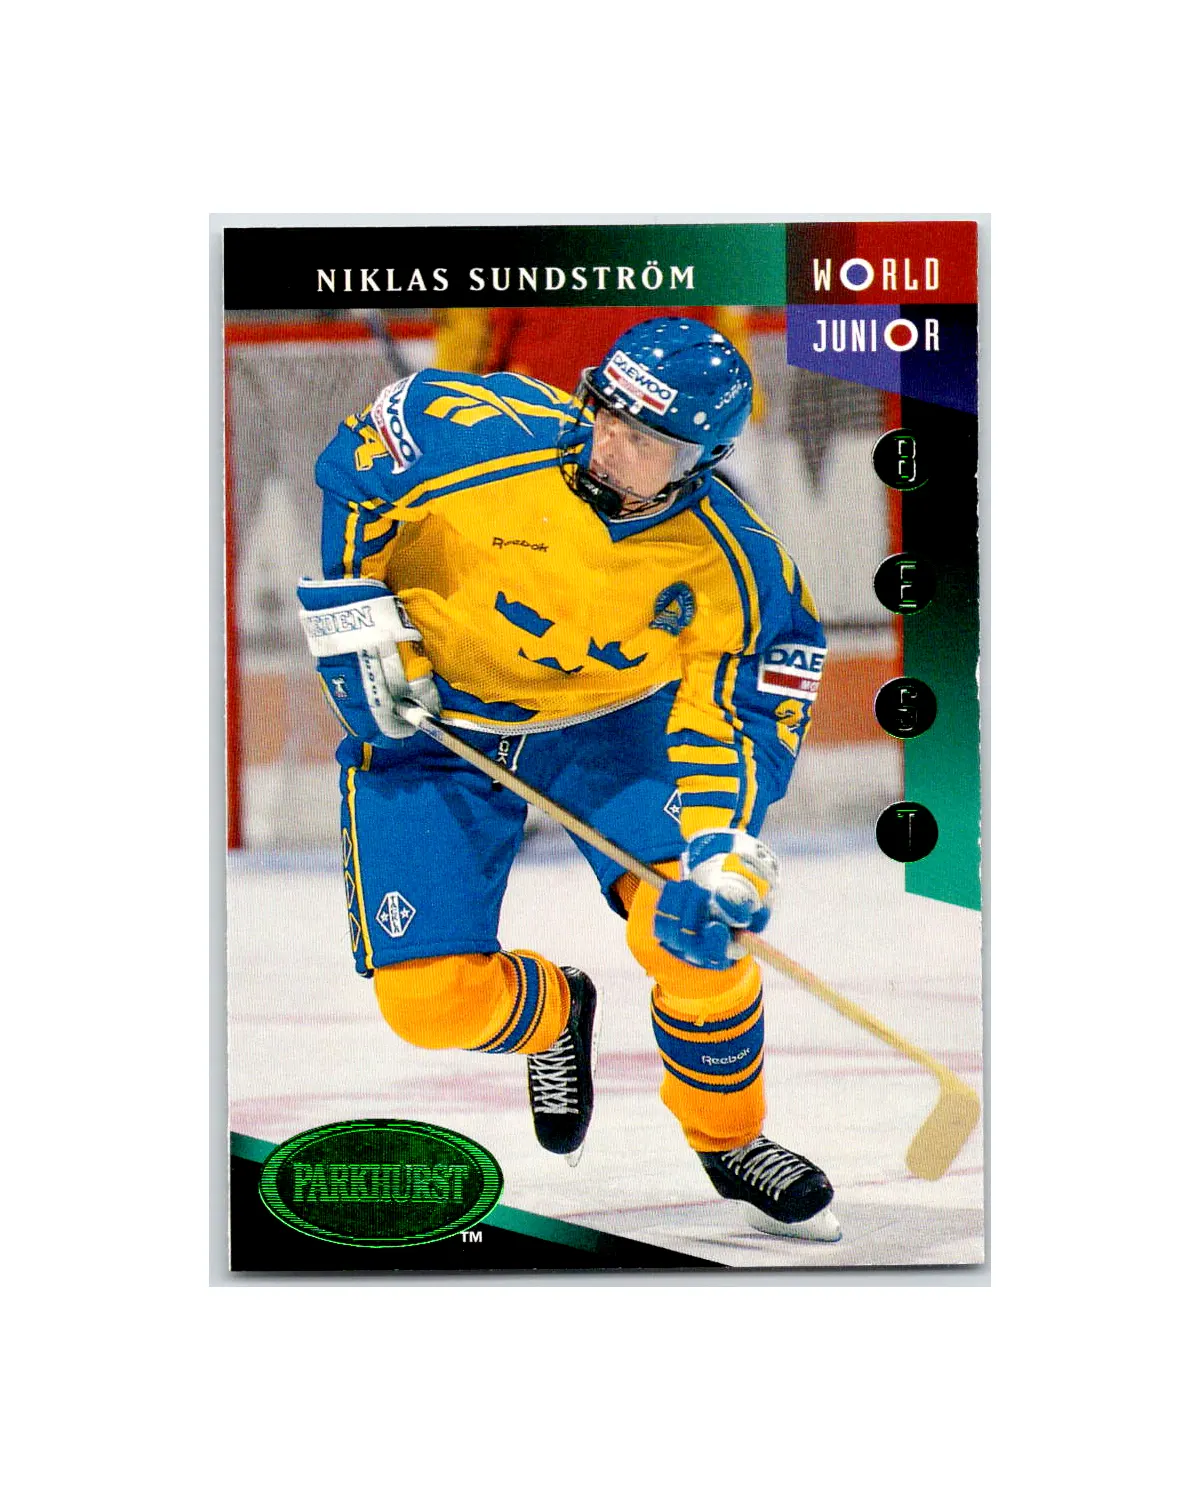 1993 World Junior Ice Hockey Championships - Wikipedia